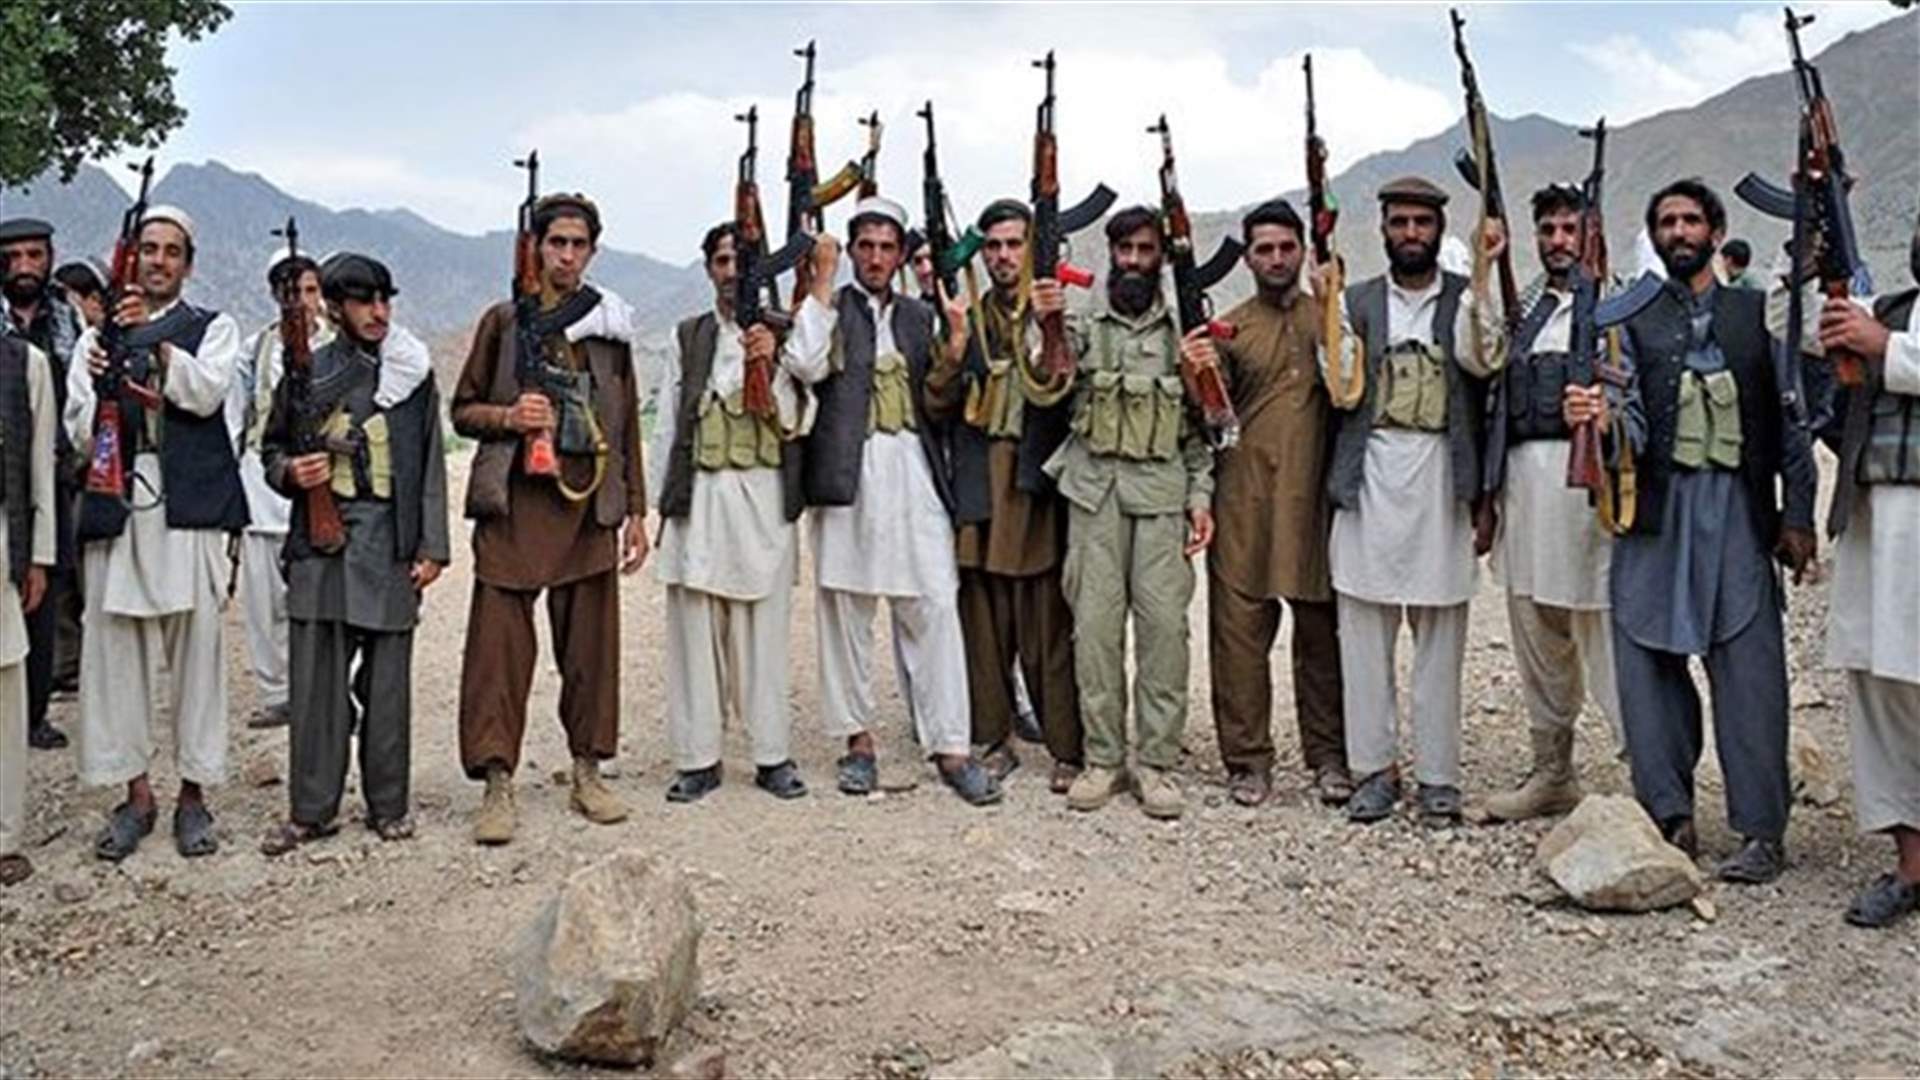 زعيم طالبان الجديد يدعو الى الوحدة في صفوف حركته